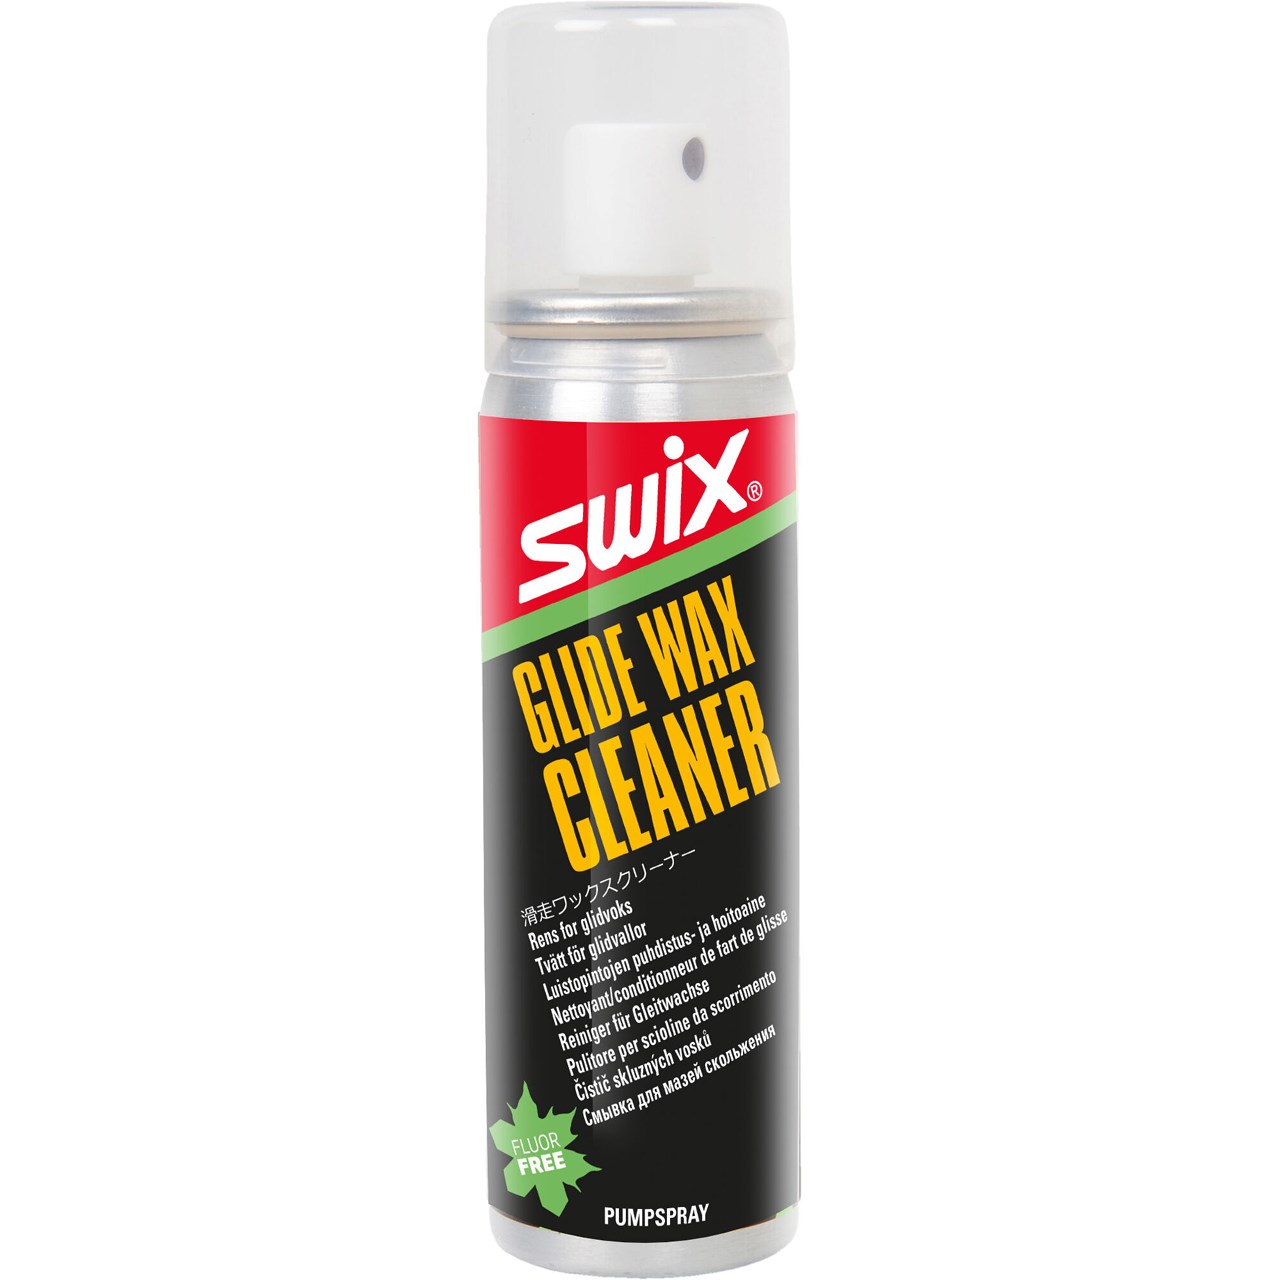 Swix Glide Wax Cleaner 70 ML